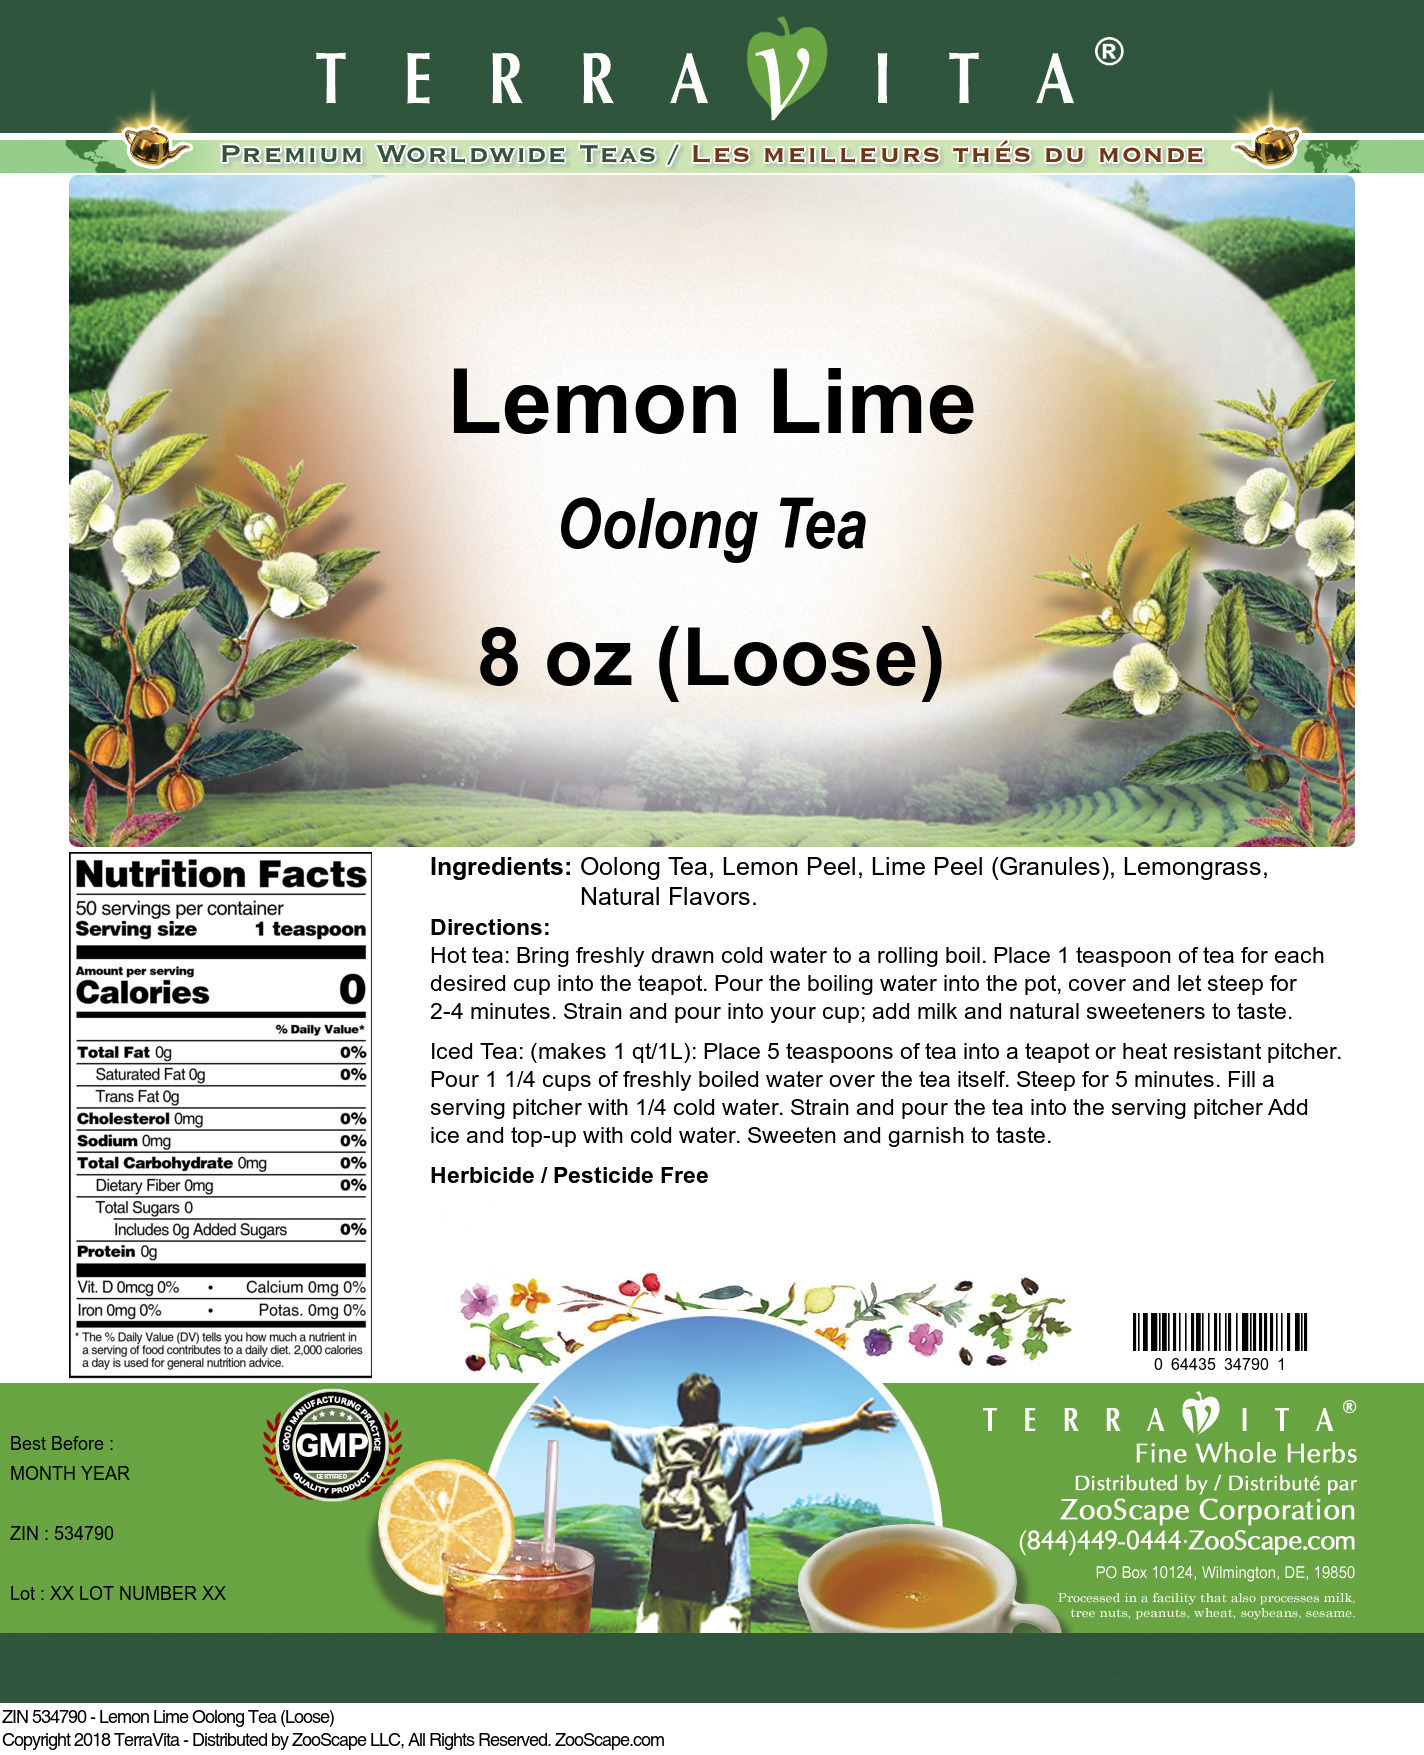 Lemon Lime Oolong Tea (Loose) - Label